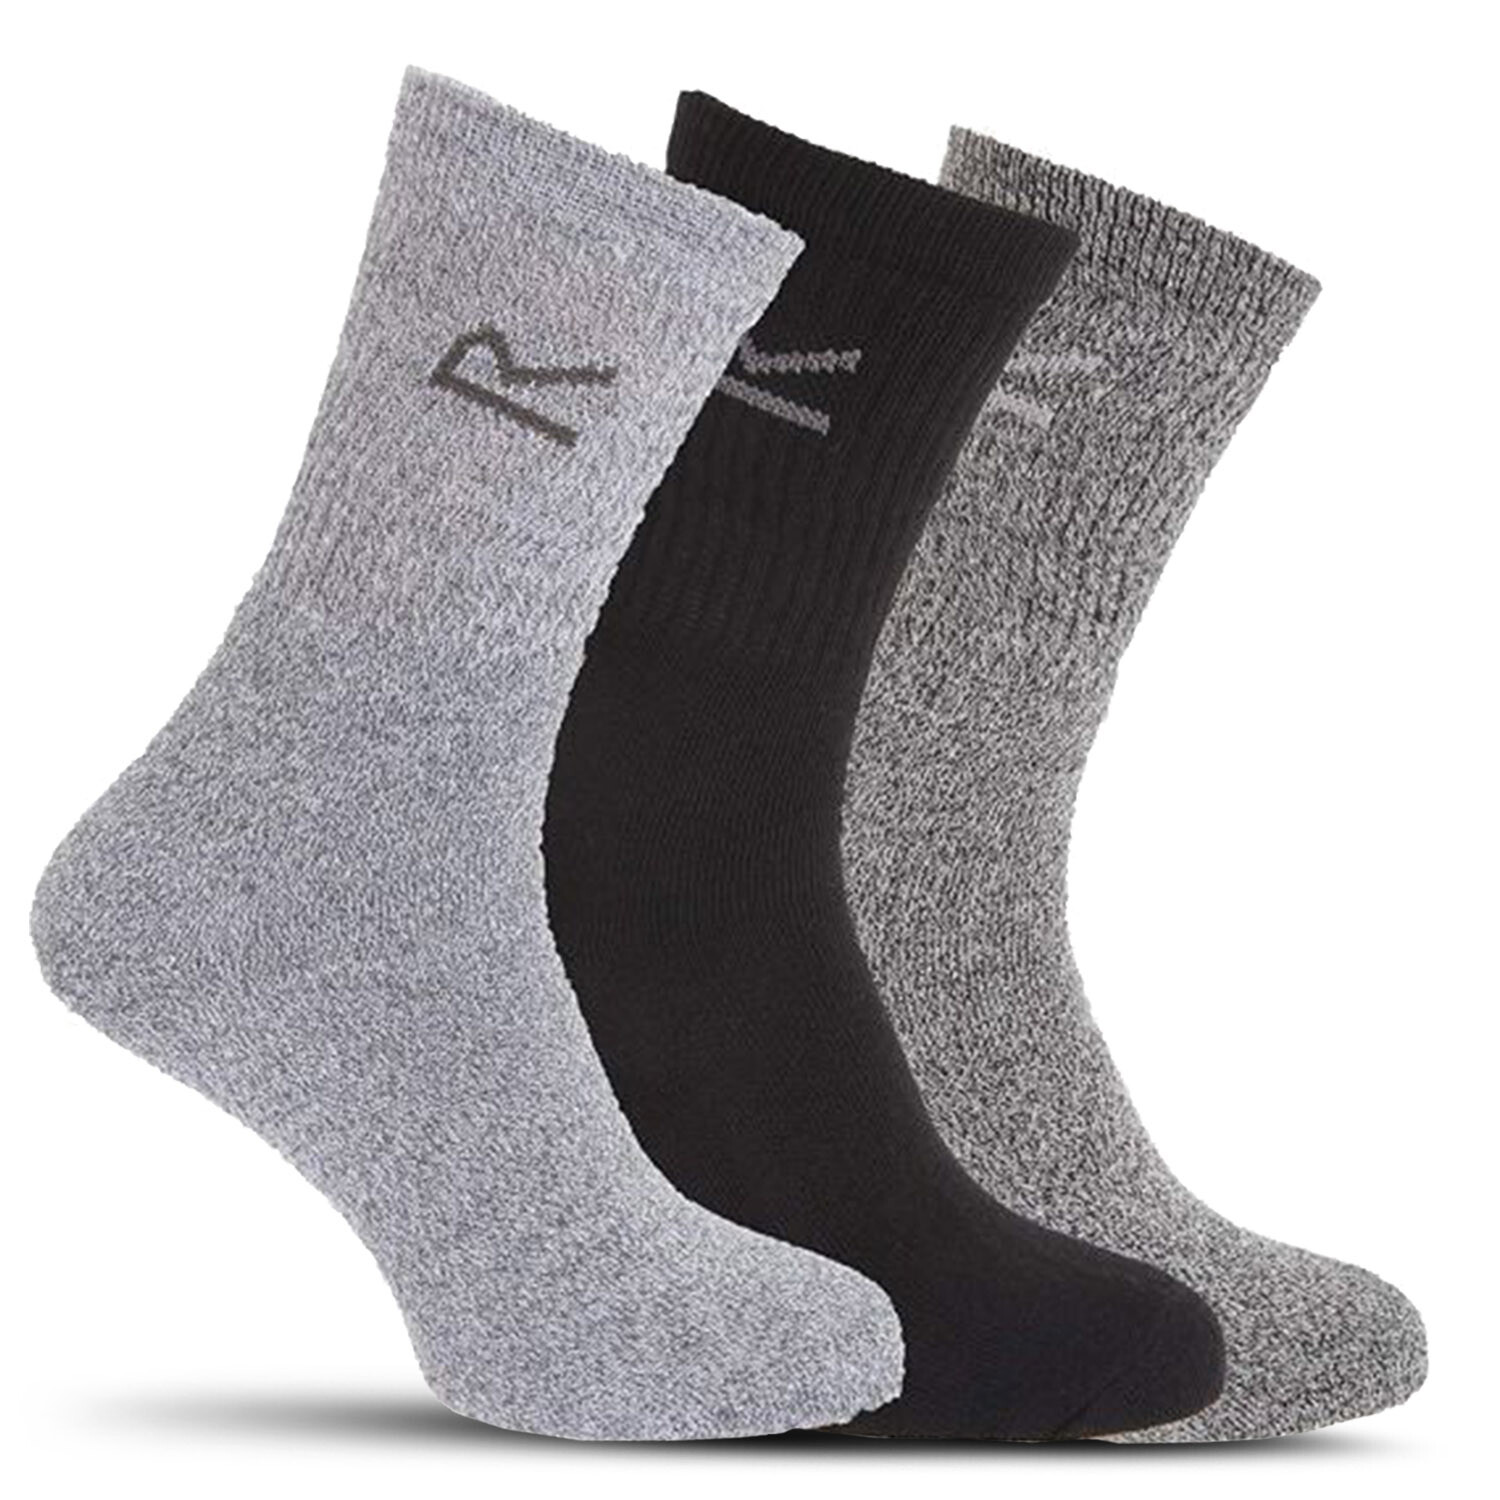 Pánské ponožky 3-pack RMH018-906 šedé - Regatta univerzální